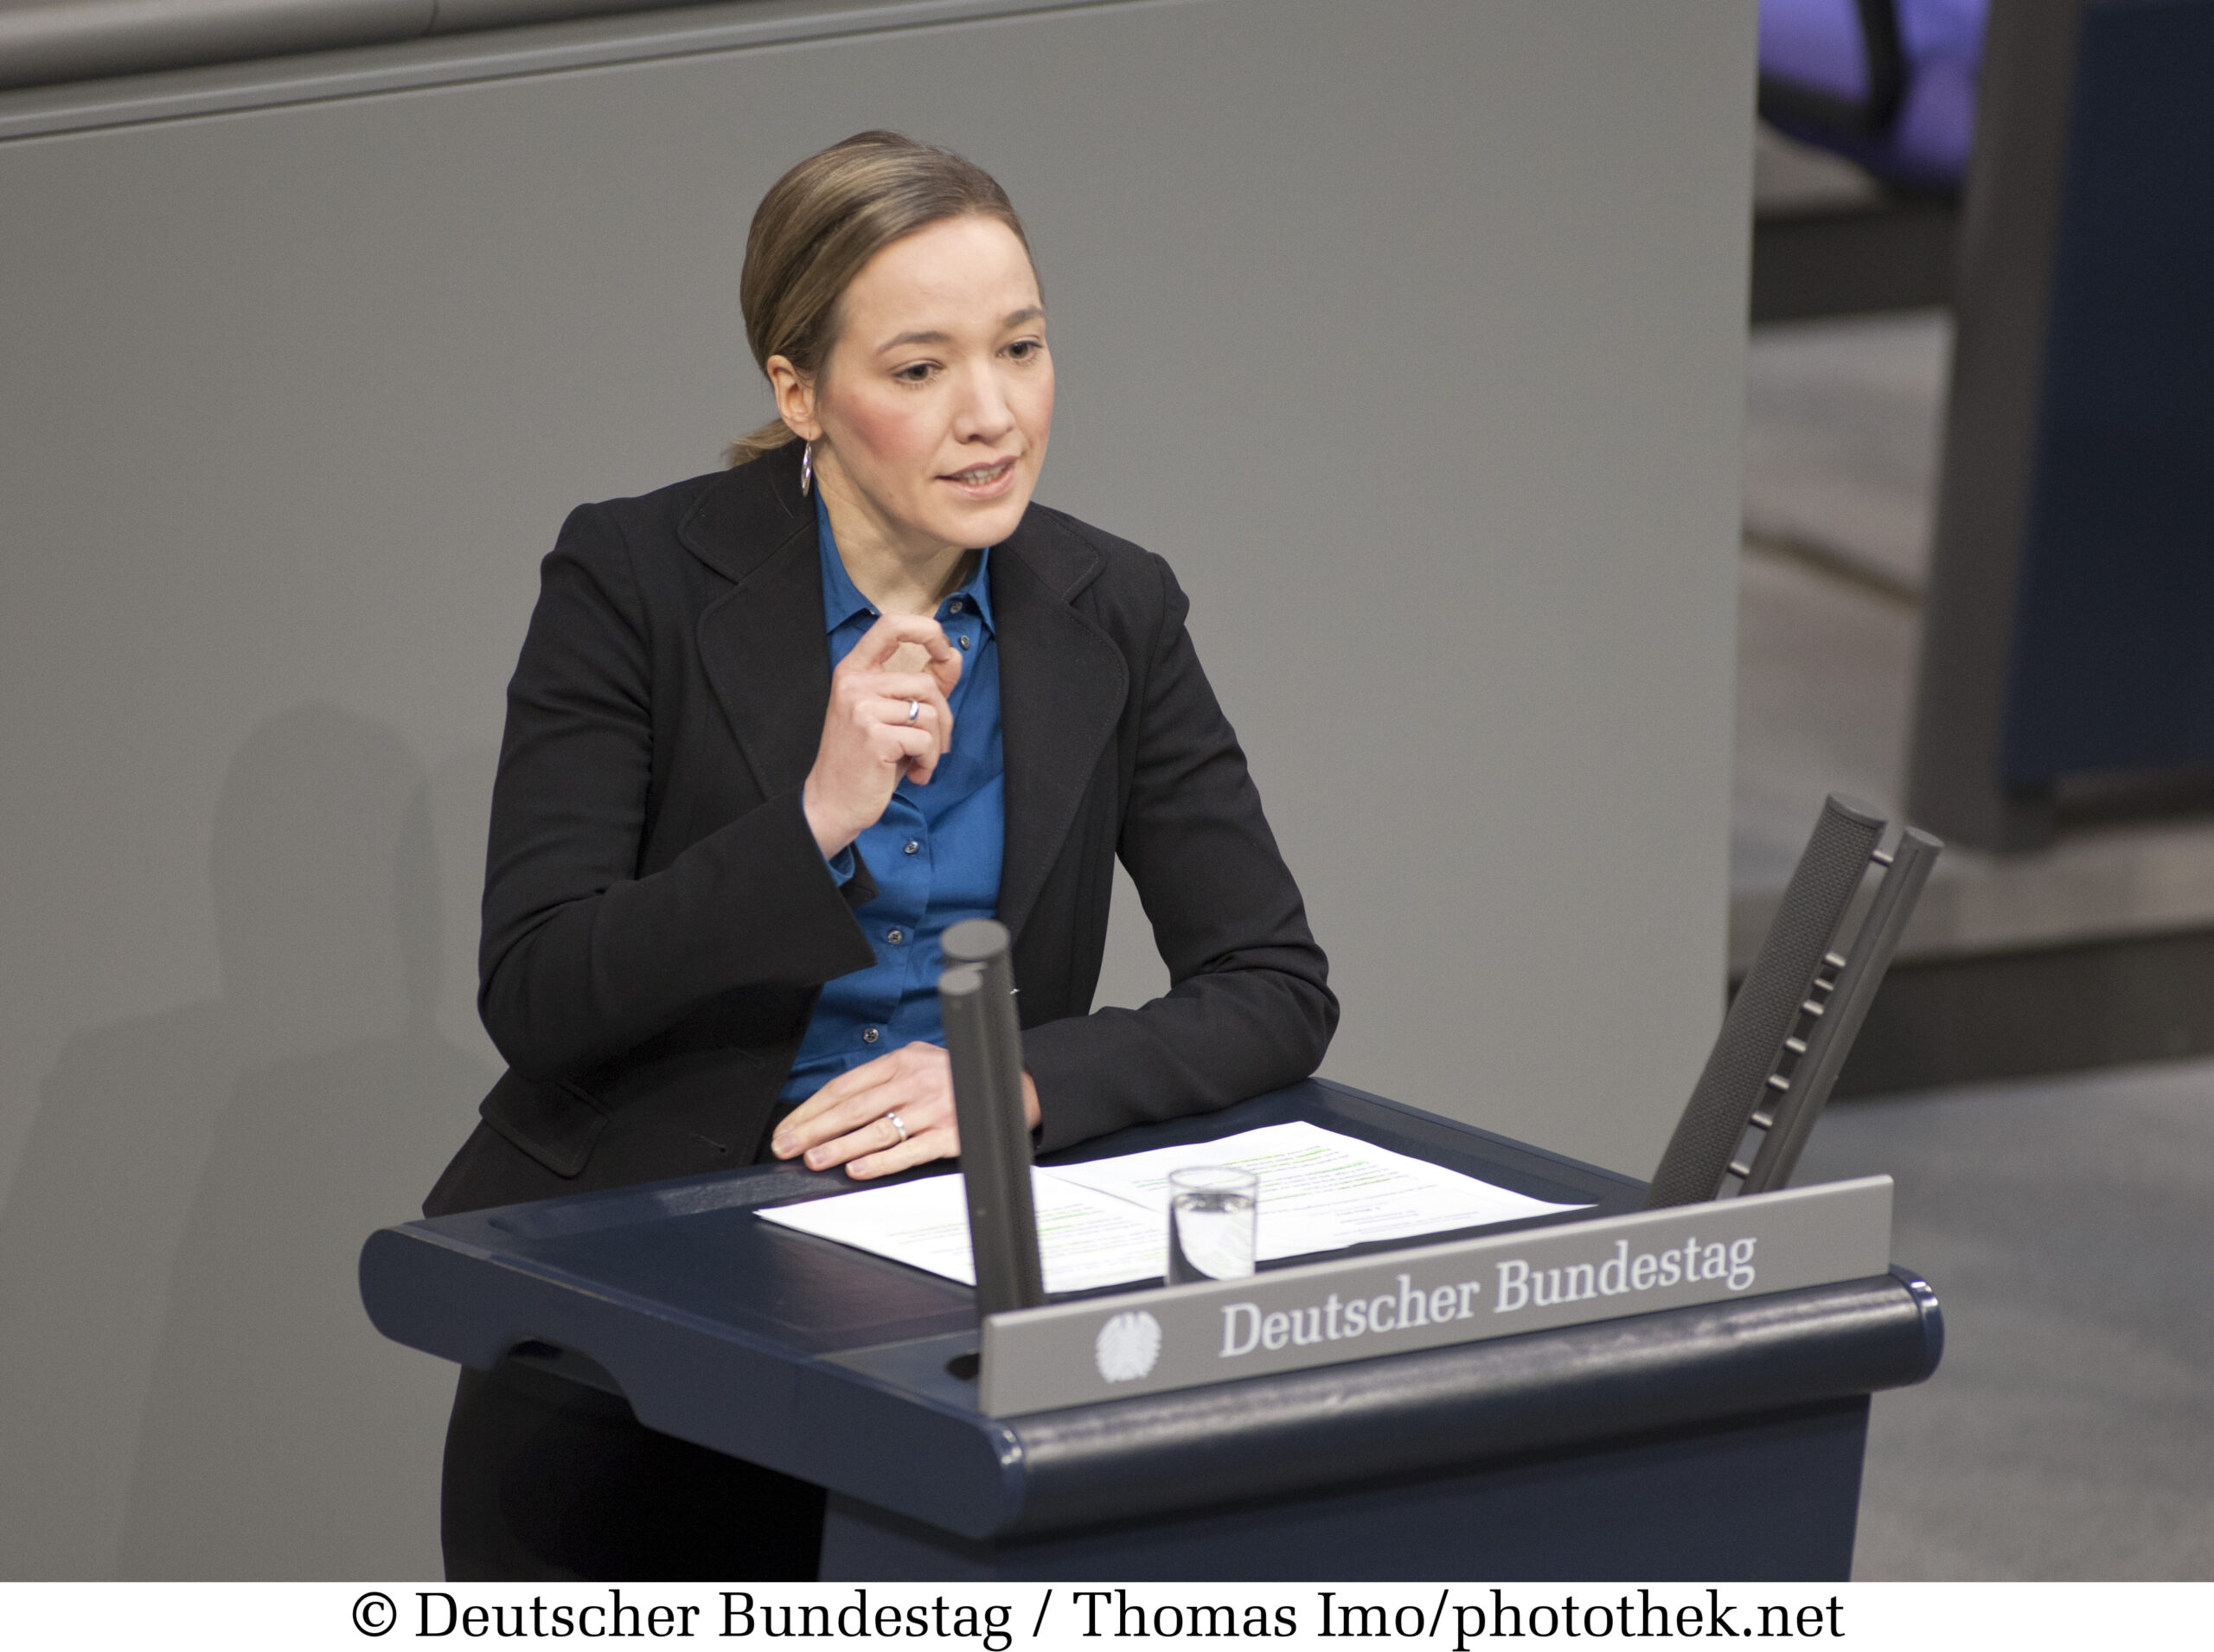 Kristina Schröder (CDU), Deutschlands Familienministerin 2009-2013, spricht in Wien über Klimaschutz und Wirtschaft. Foto: Thomas Ivo/photothek.net